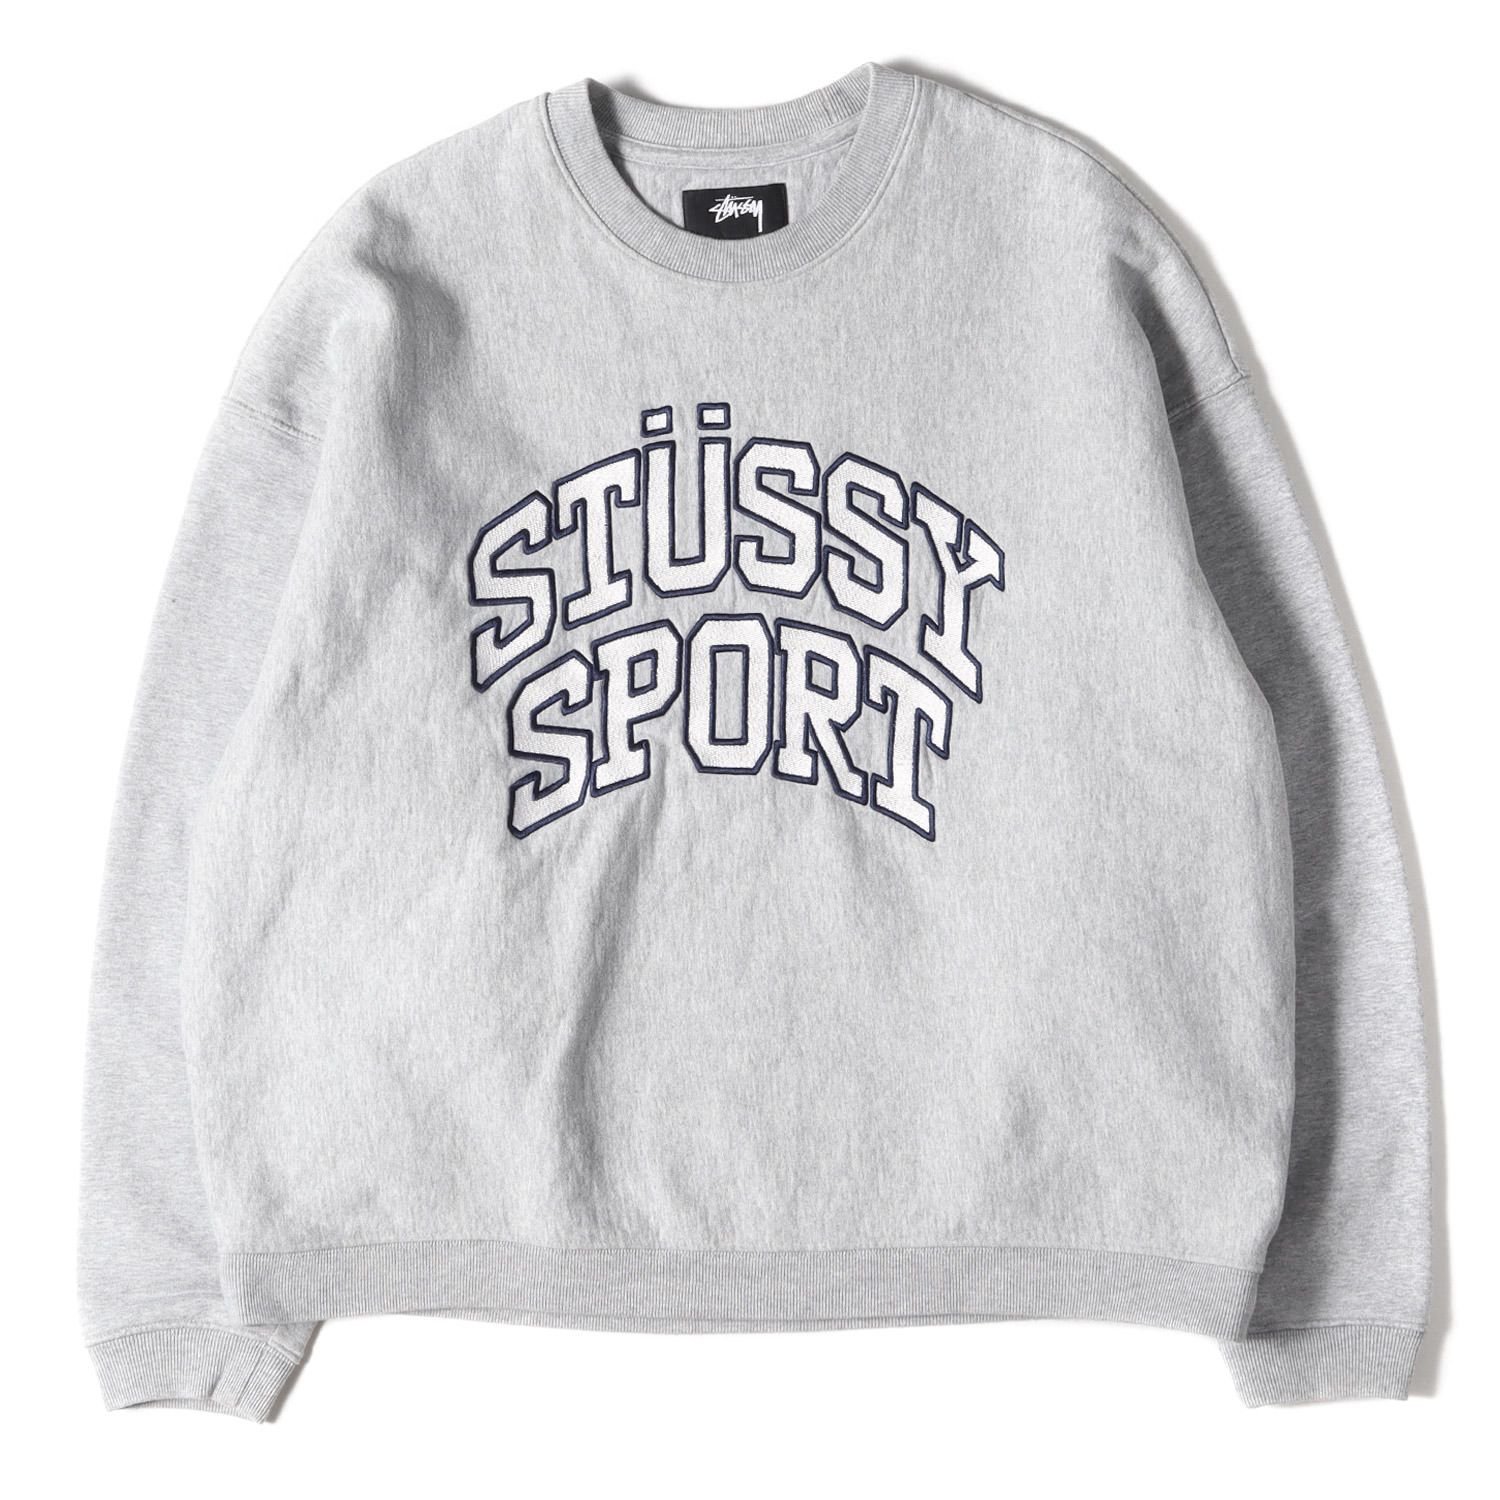 stussy sports】トレーナー 水色 刺繍ロゴ 人気モデル 22AW - 通販 ...